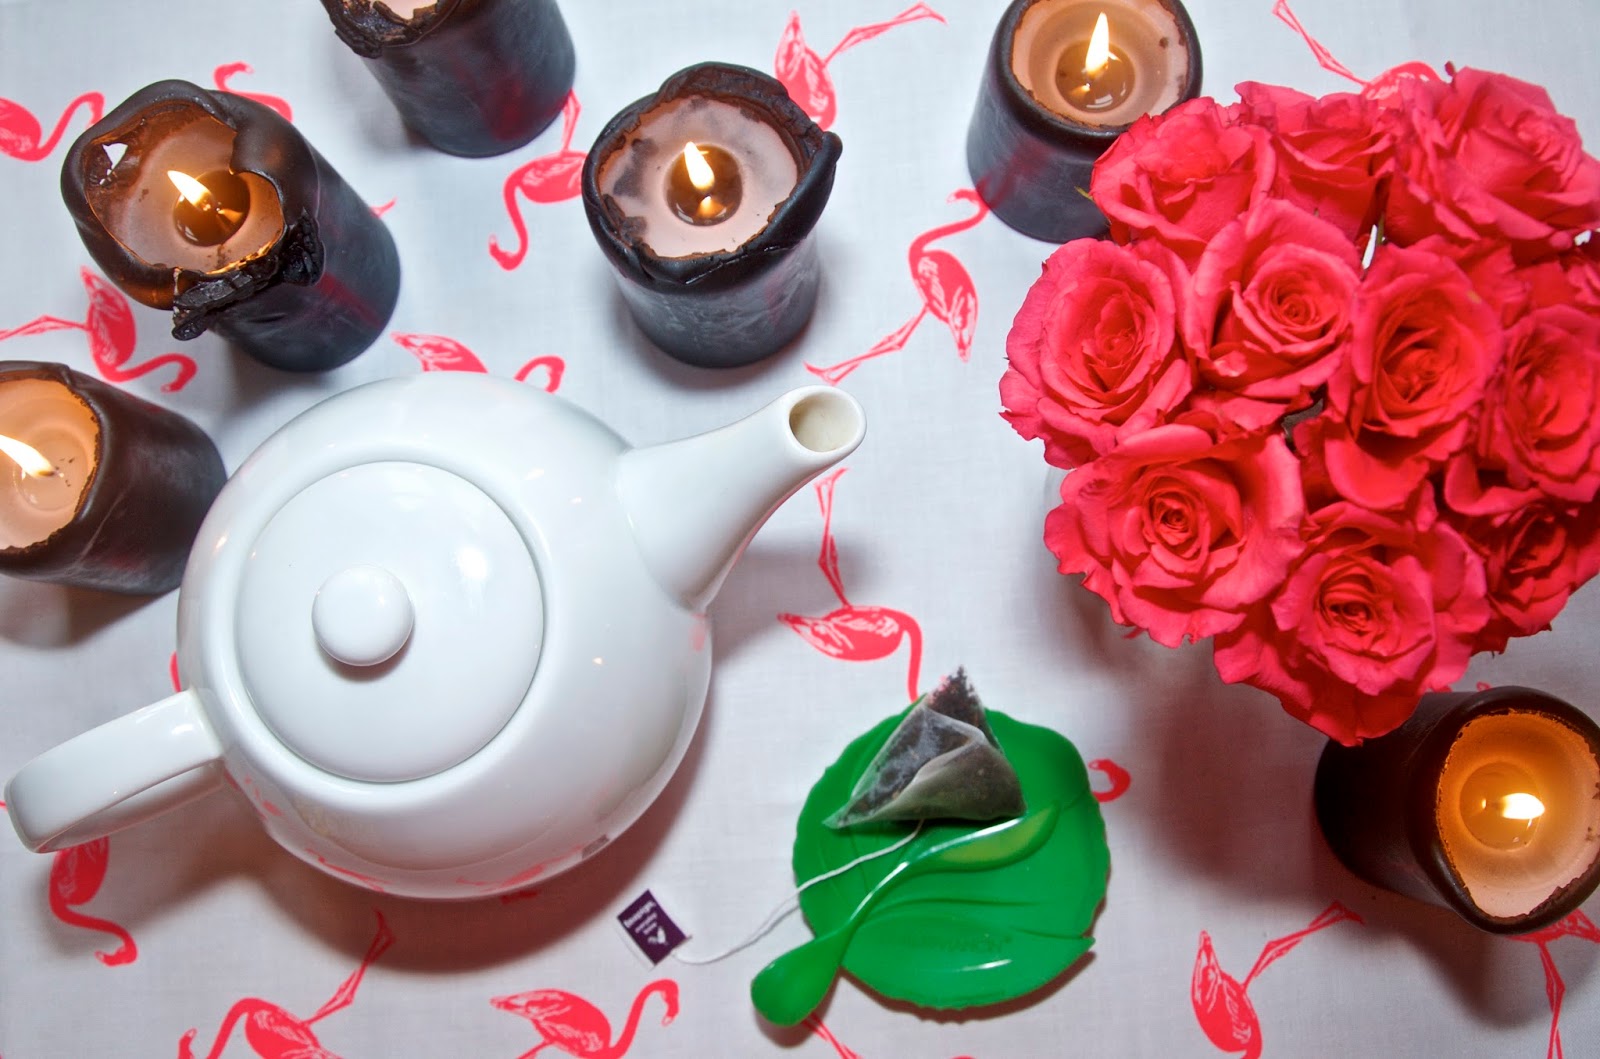 Pink roses, black candles, flamingo tea towel, teapot and tea bag on green saucer